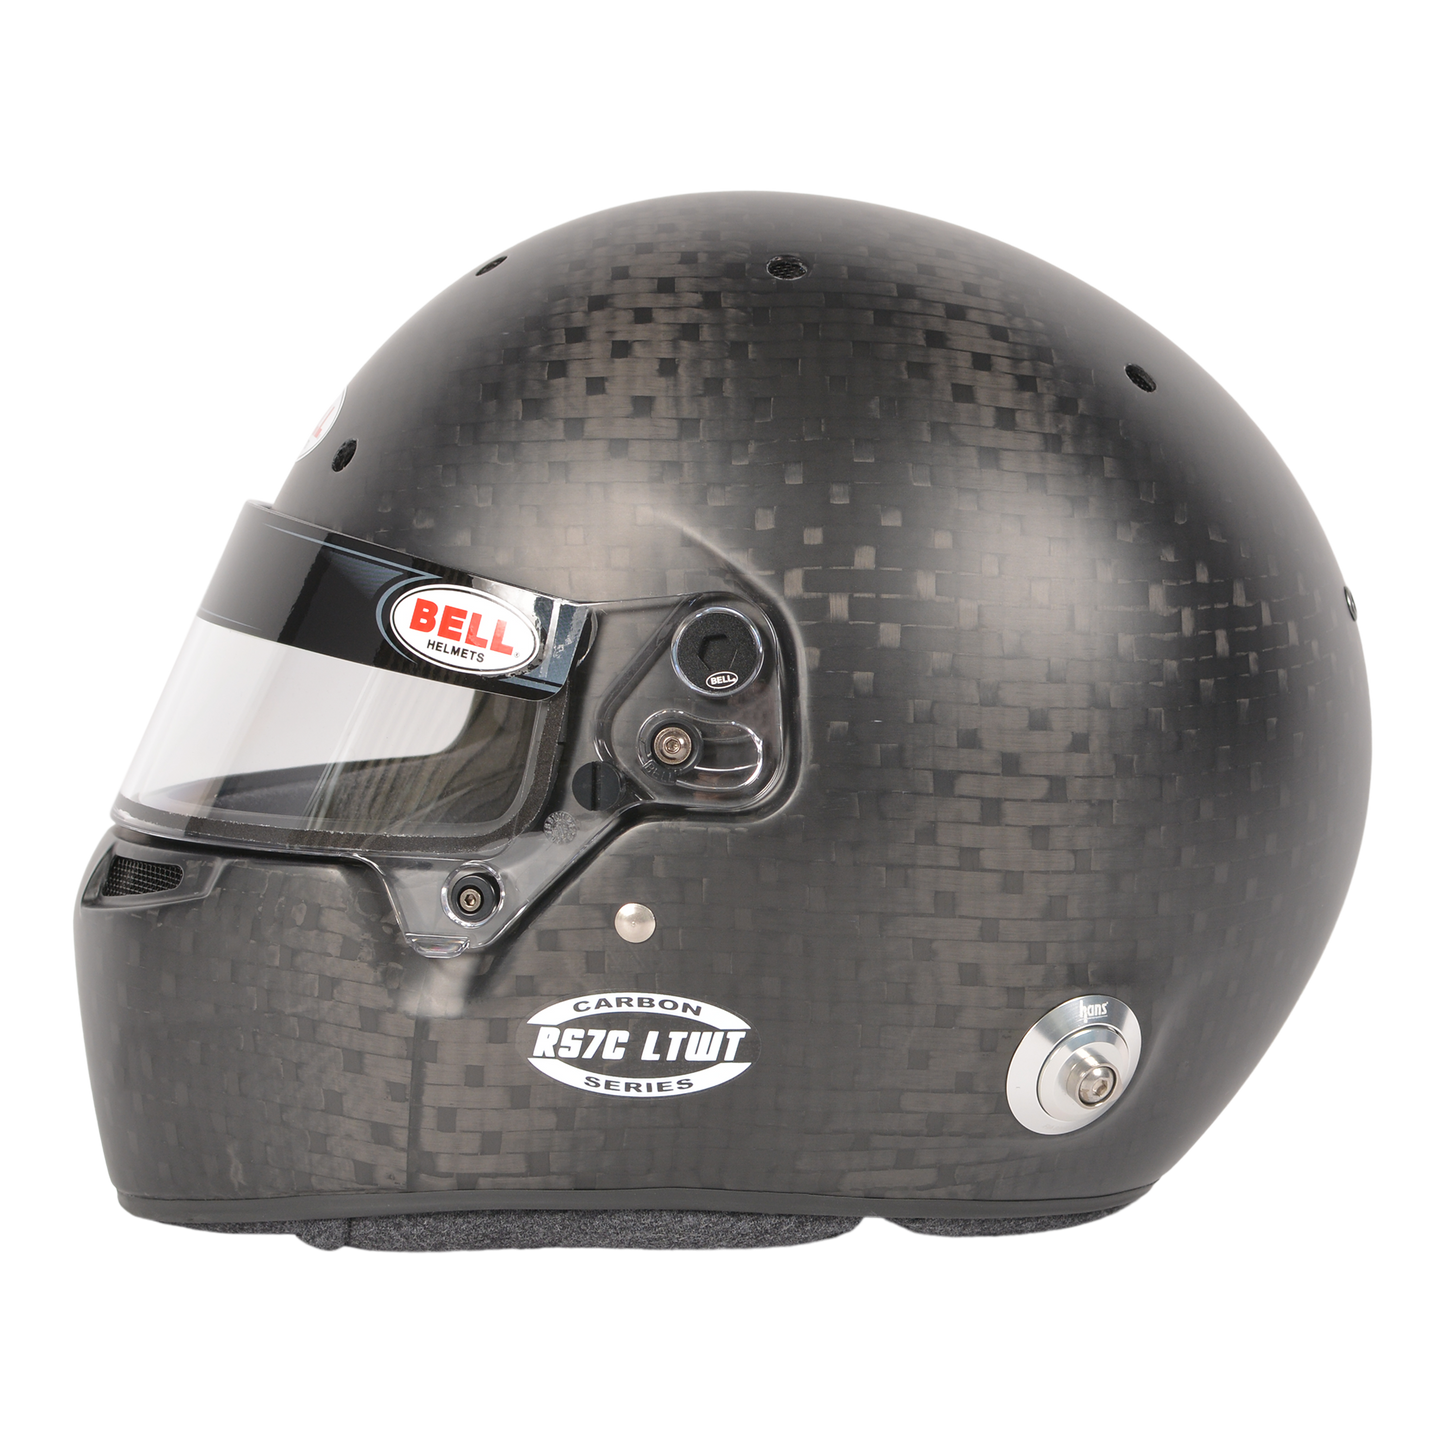 Bell Lightweight side view of helmet